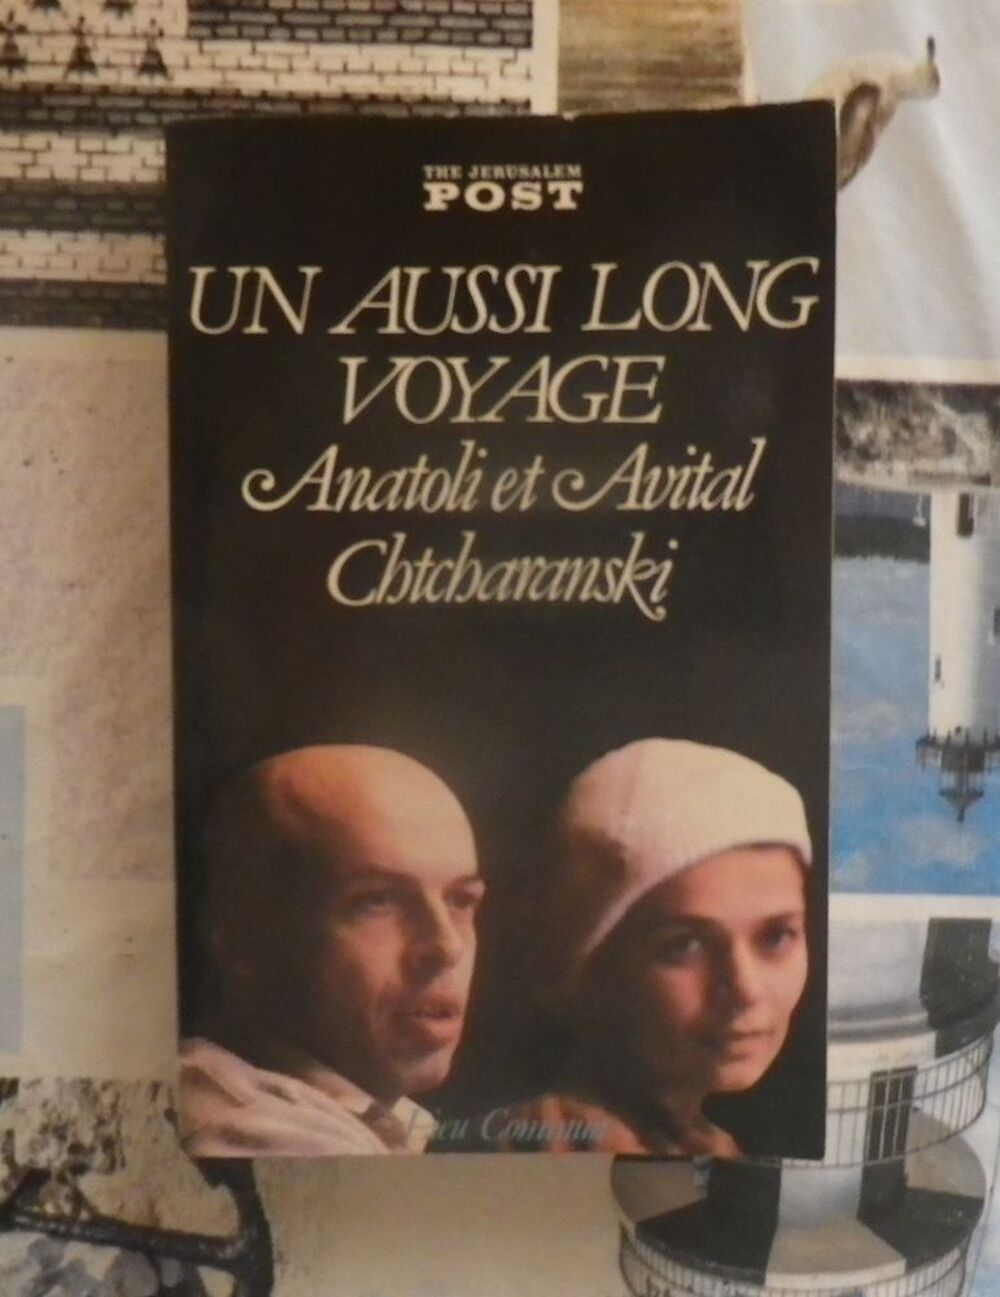 UN AUSSI LONG VOYAGE Anatoli et Avital Chtcharanski Livres et BD